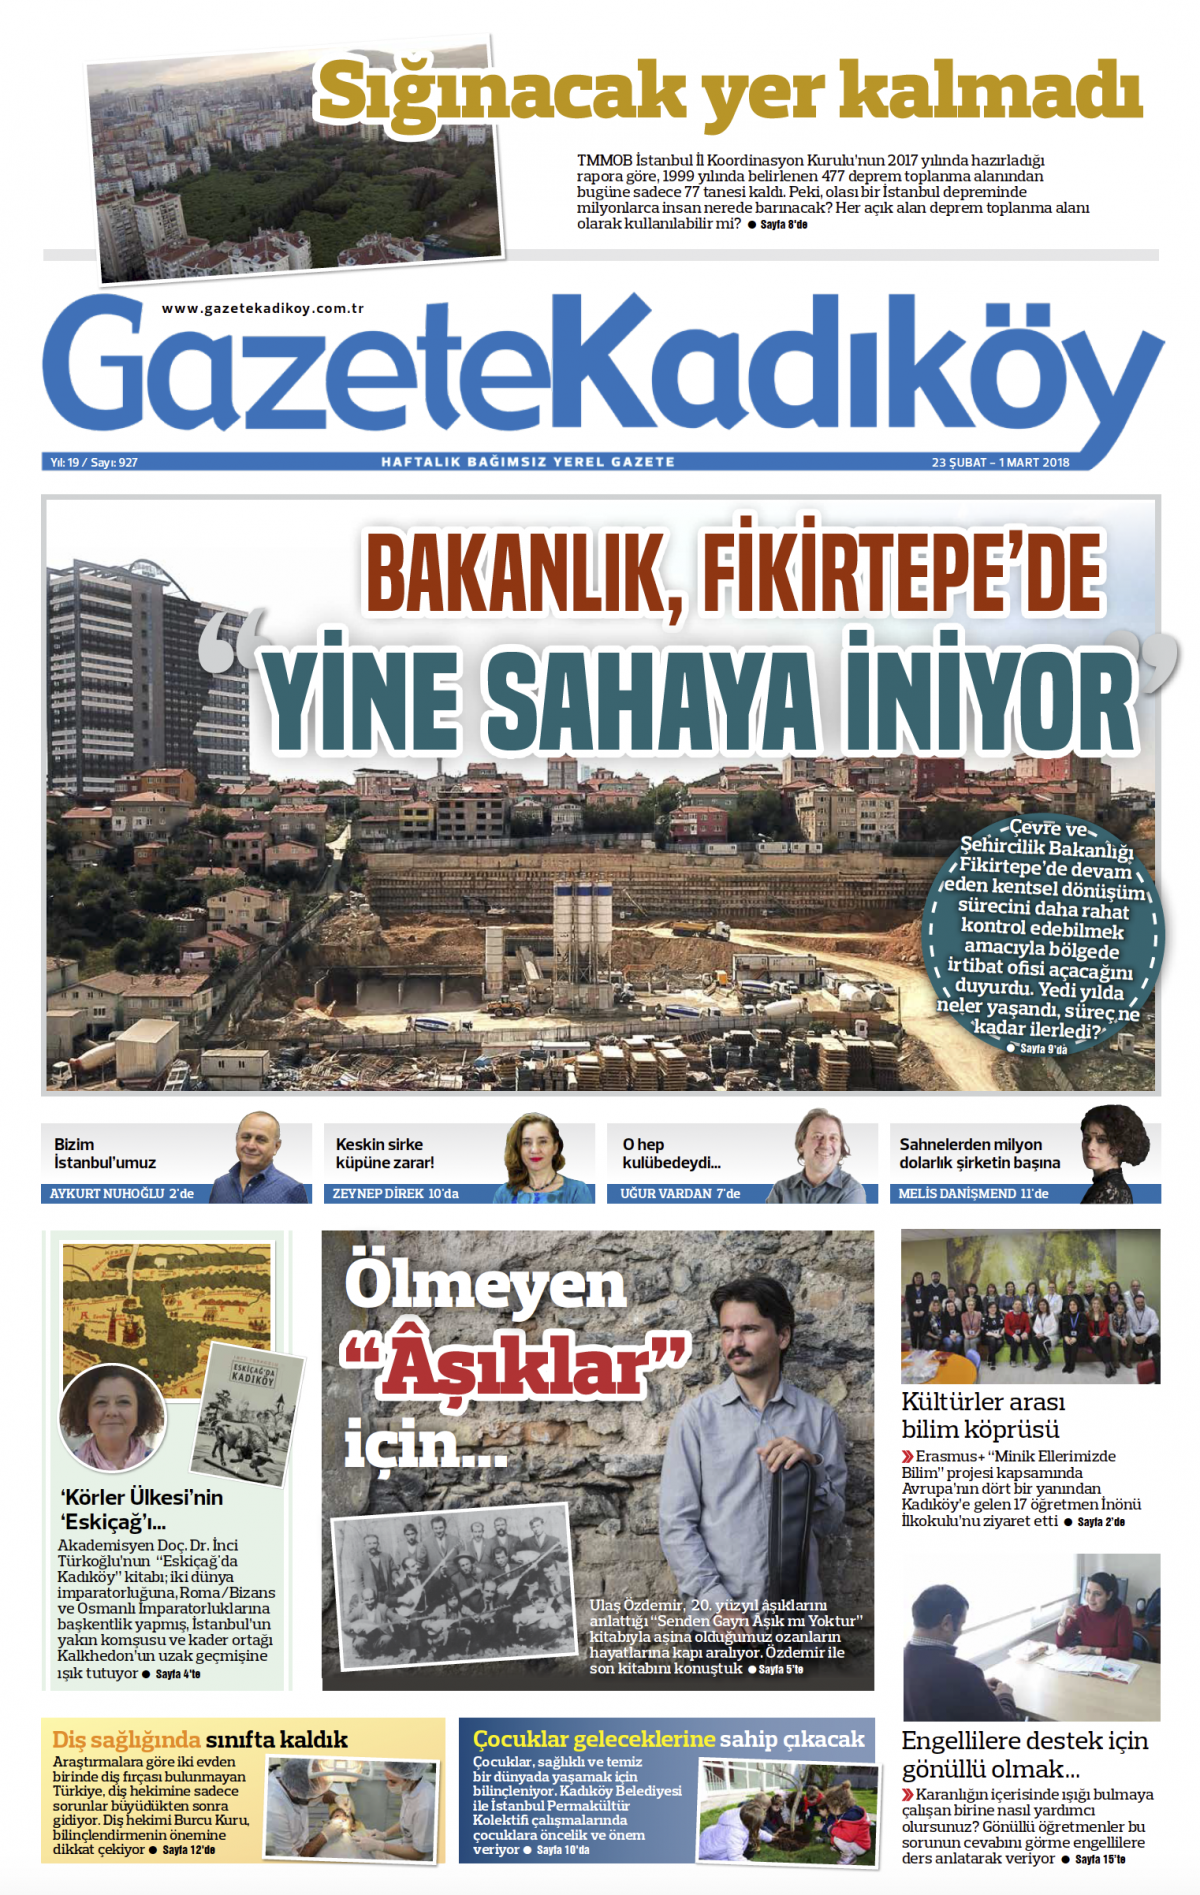 Gazete Kadıköy - 927